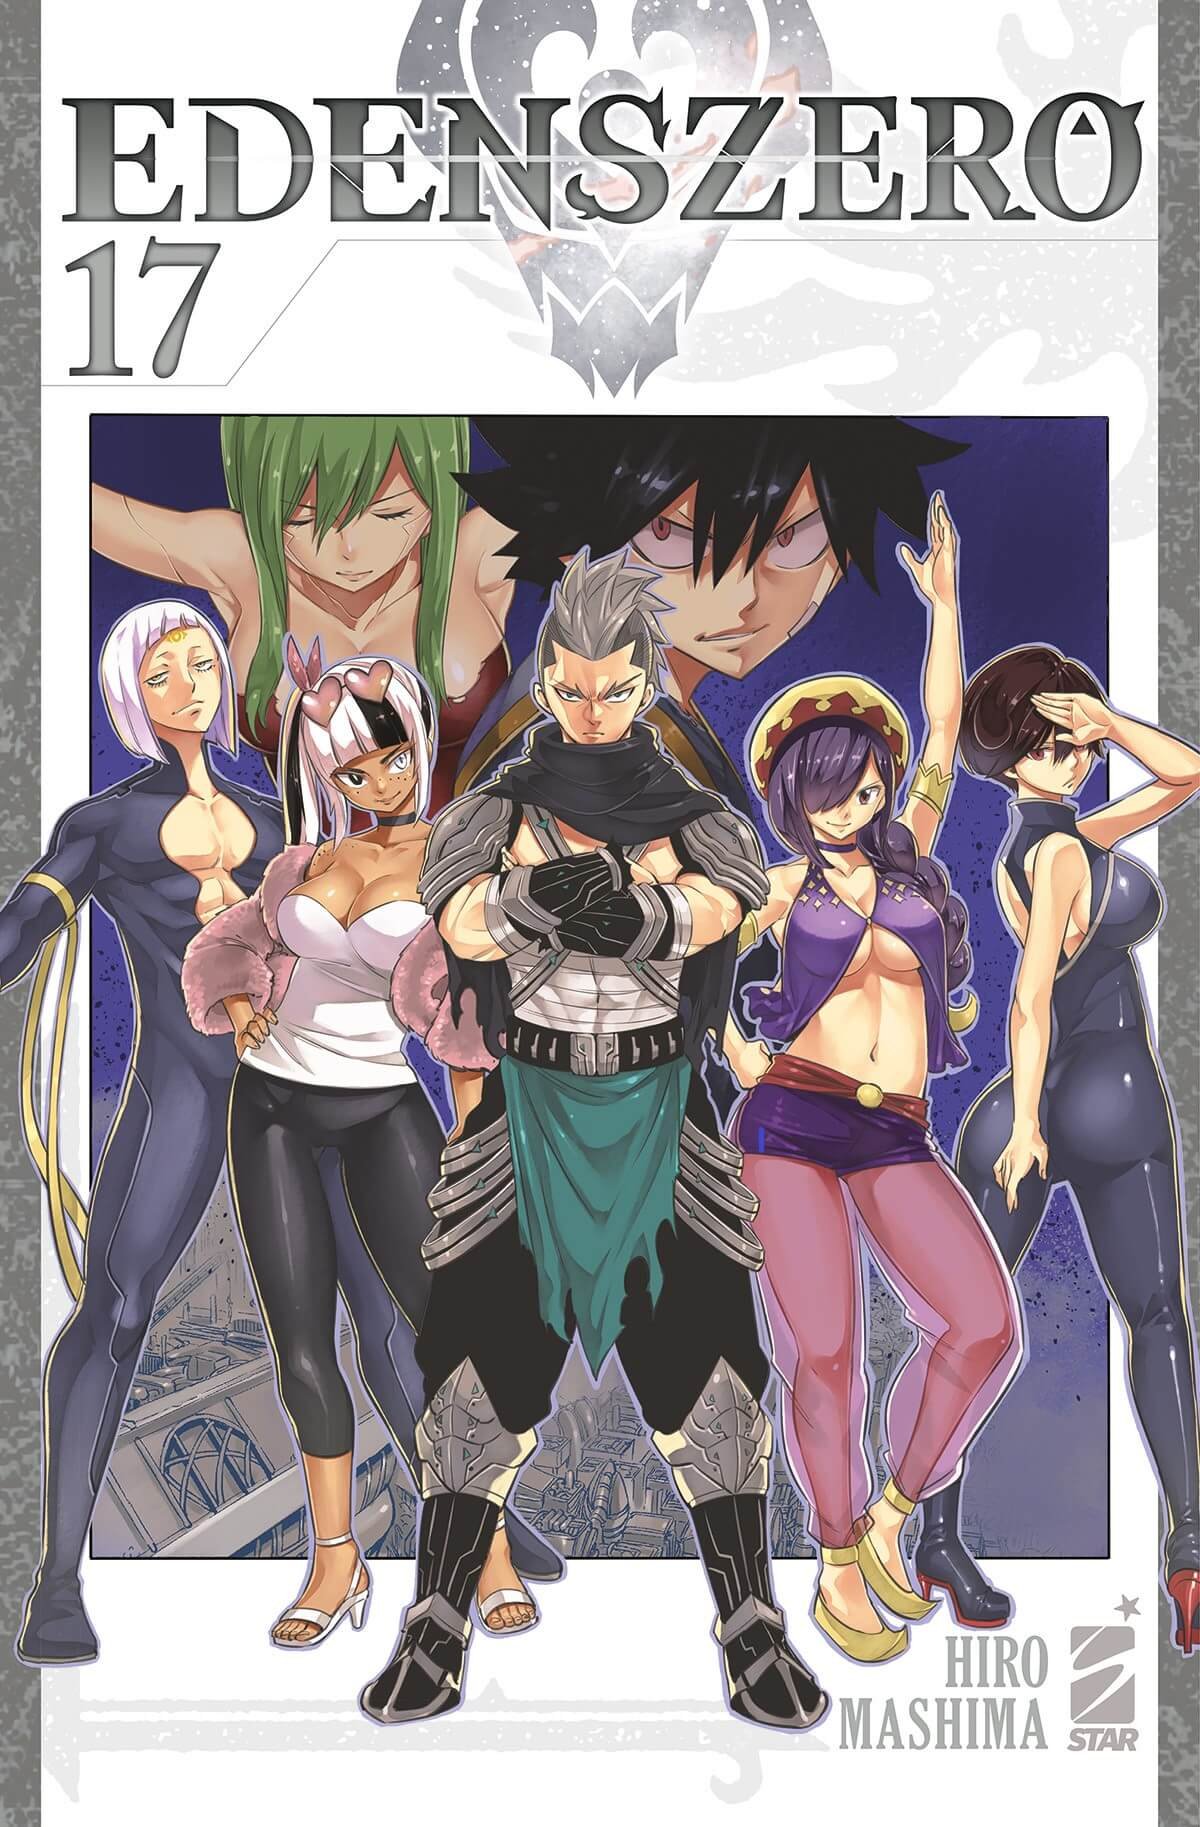 Edens Zero 17, parmi les sorties manga Star Comics du 1er février 2023